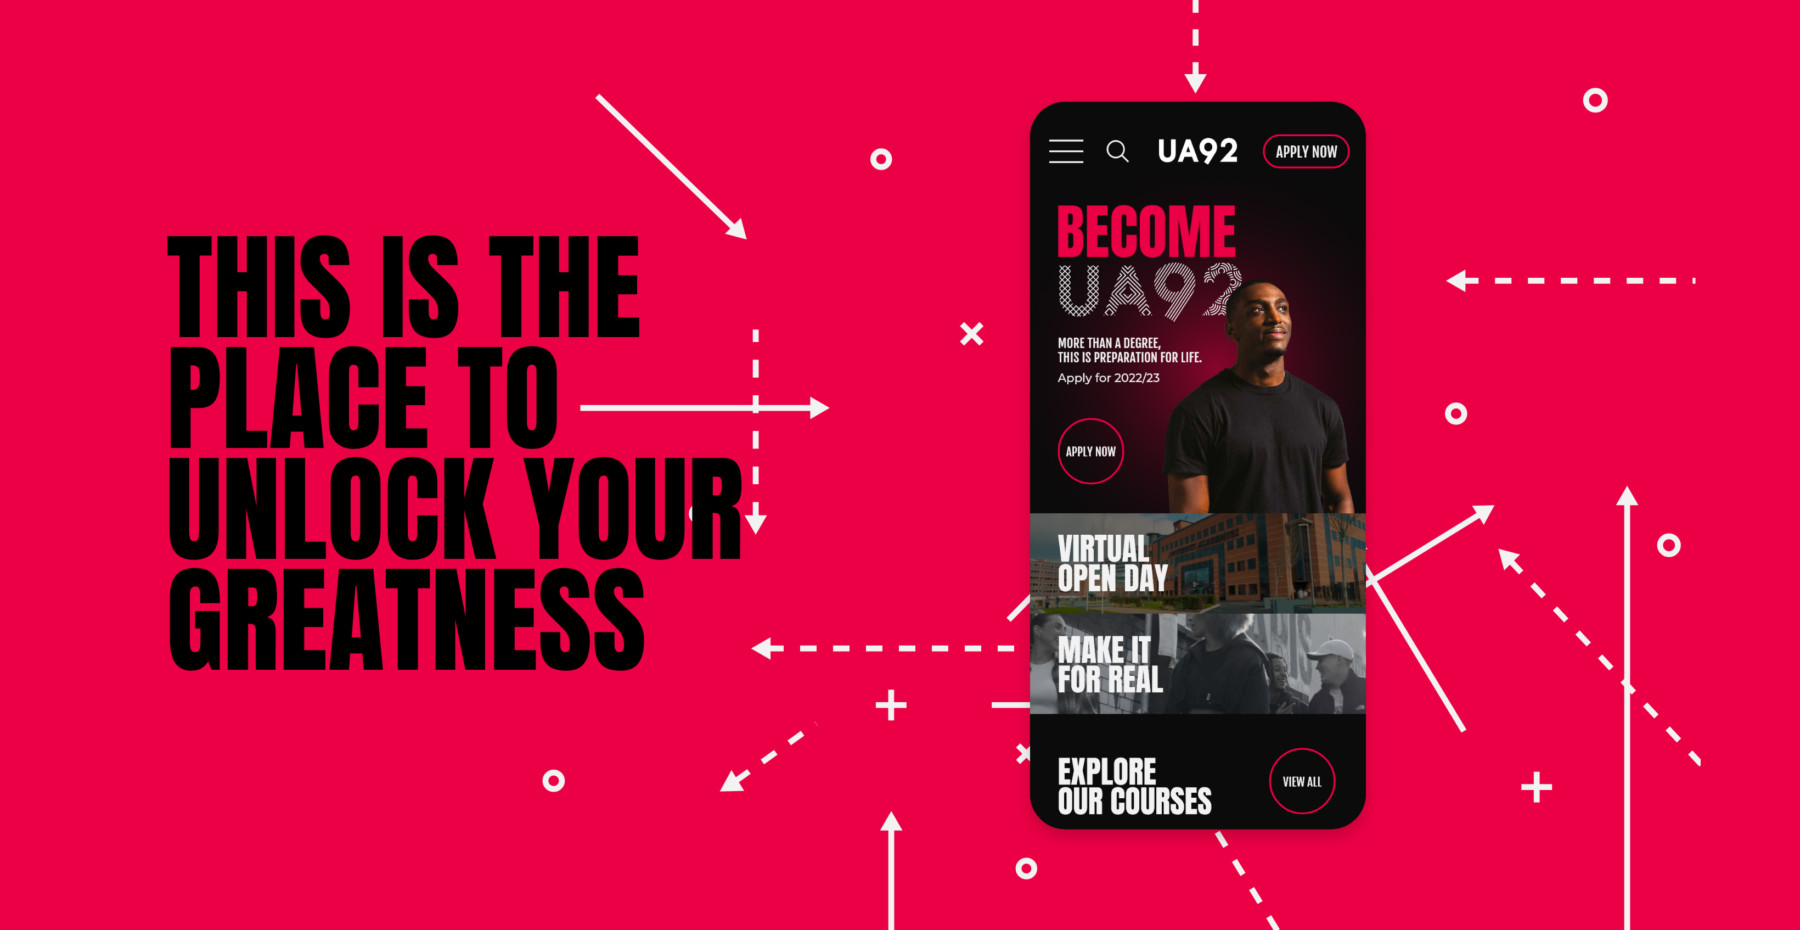 UA92 - Website design & development - 2